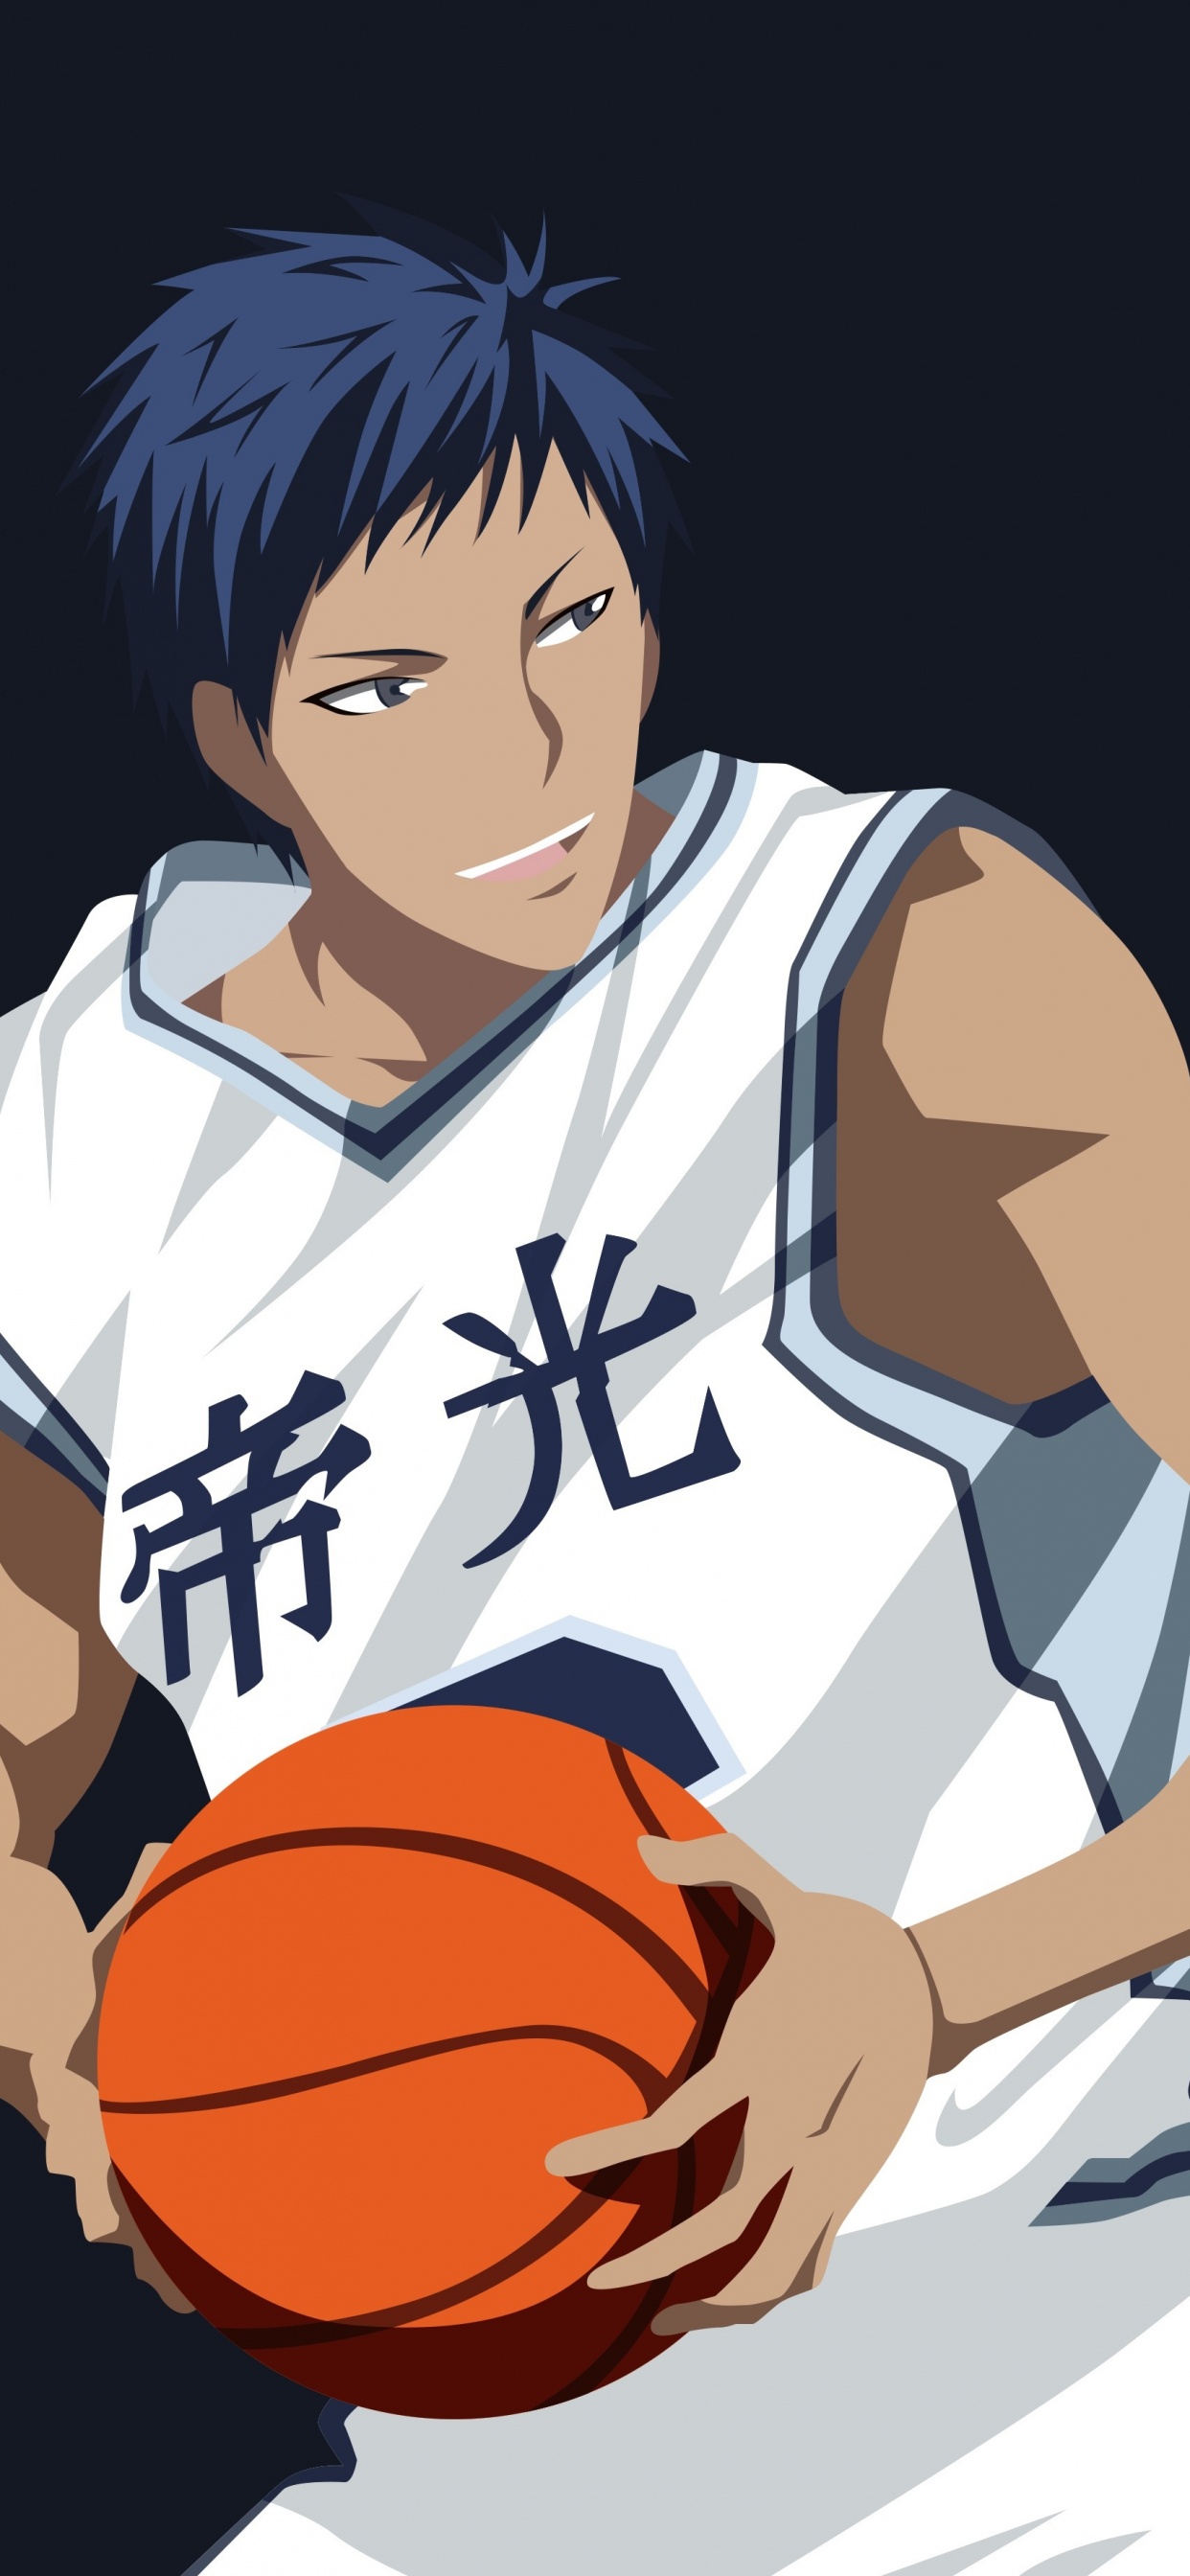 Personaje de Anime Masculino de Pelo Negro Sosteniendo Baloncesto. Wallpaper in 1242x2688 Resolution